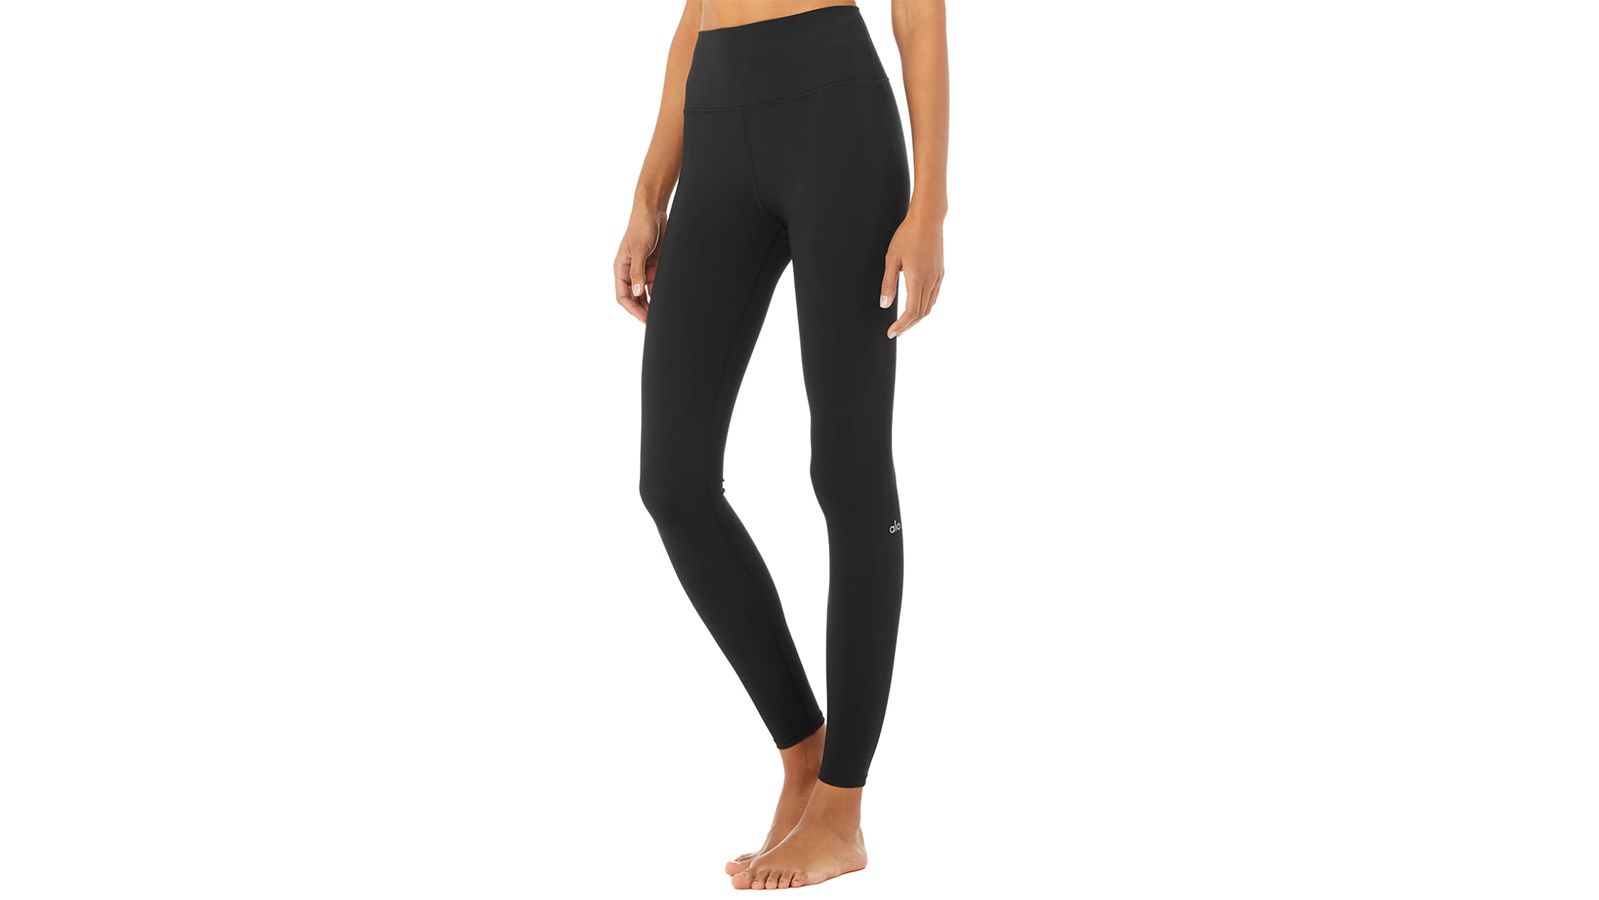 ALO Yoga, Pants & Jumpsuits, New Alo Yoga Black Leggings Size Small